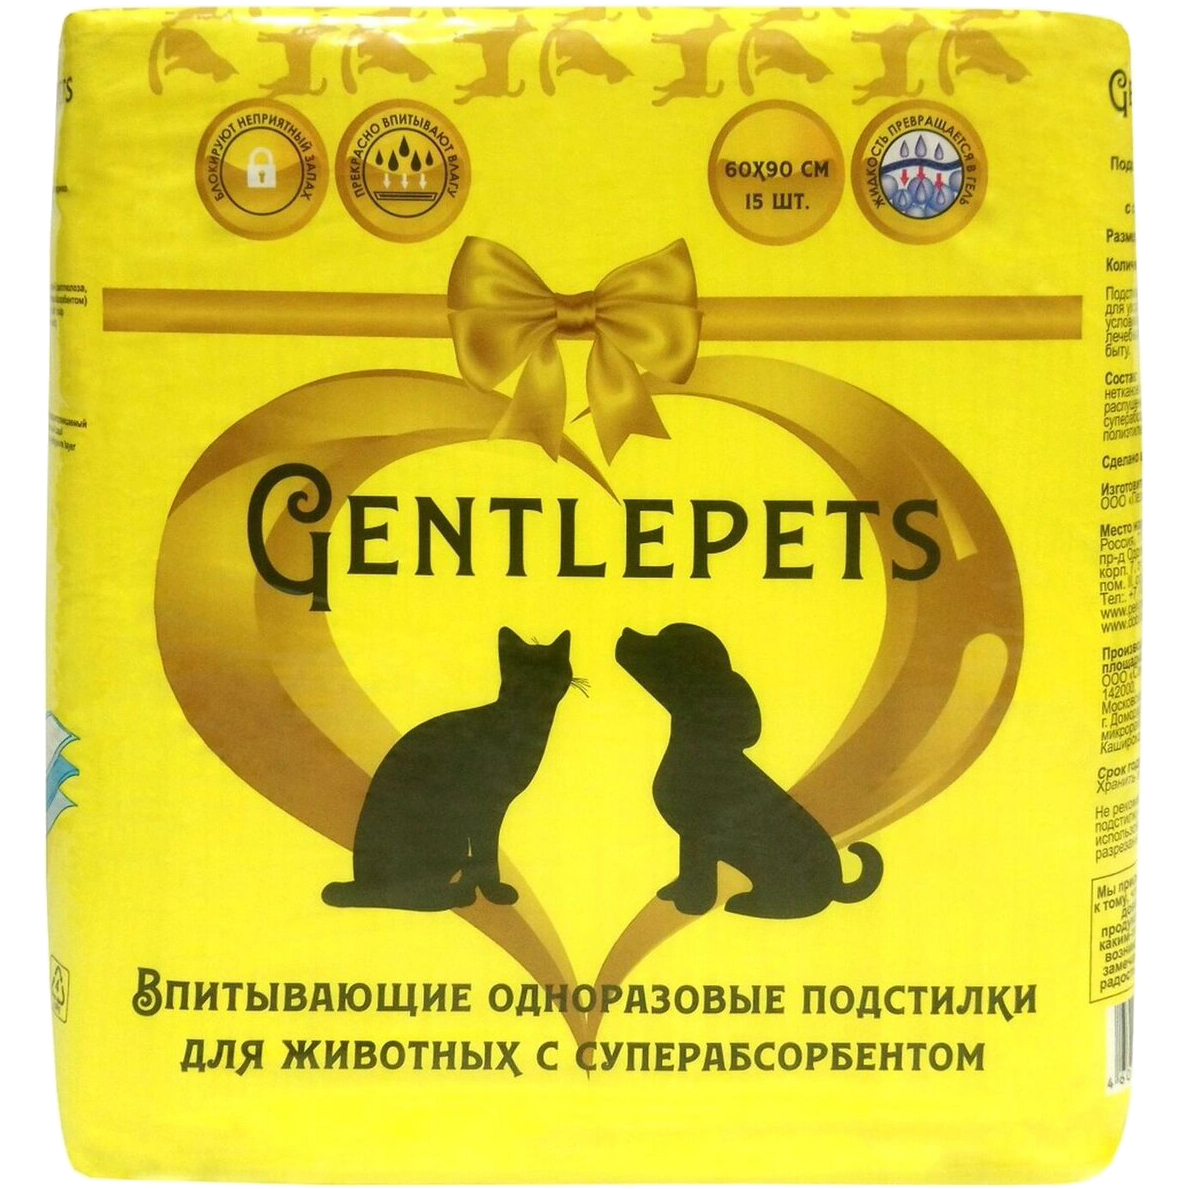 фото Подстилки для домашних животных gentlepets впитывающие с суперабсорбентом 60х90 см 15 шт